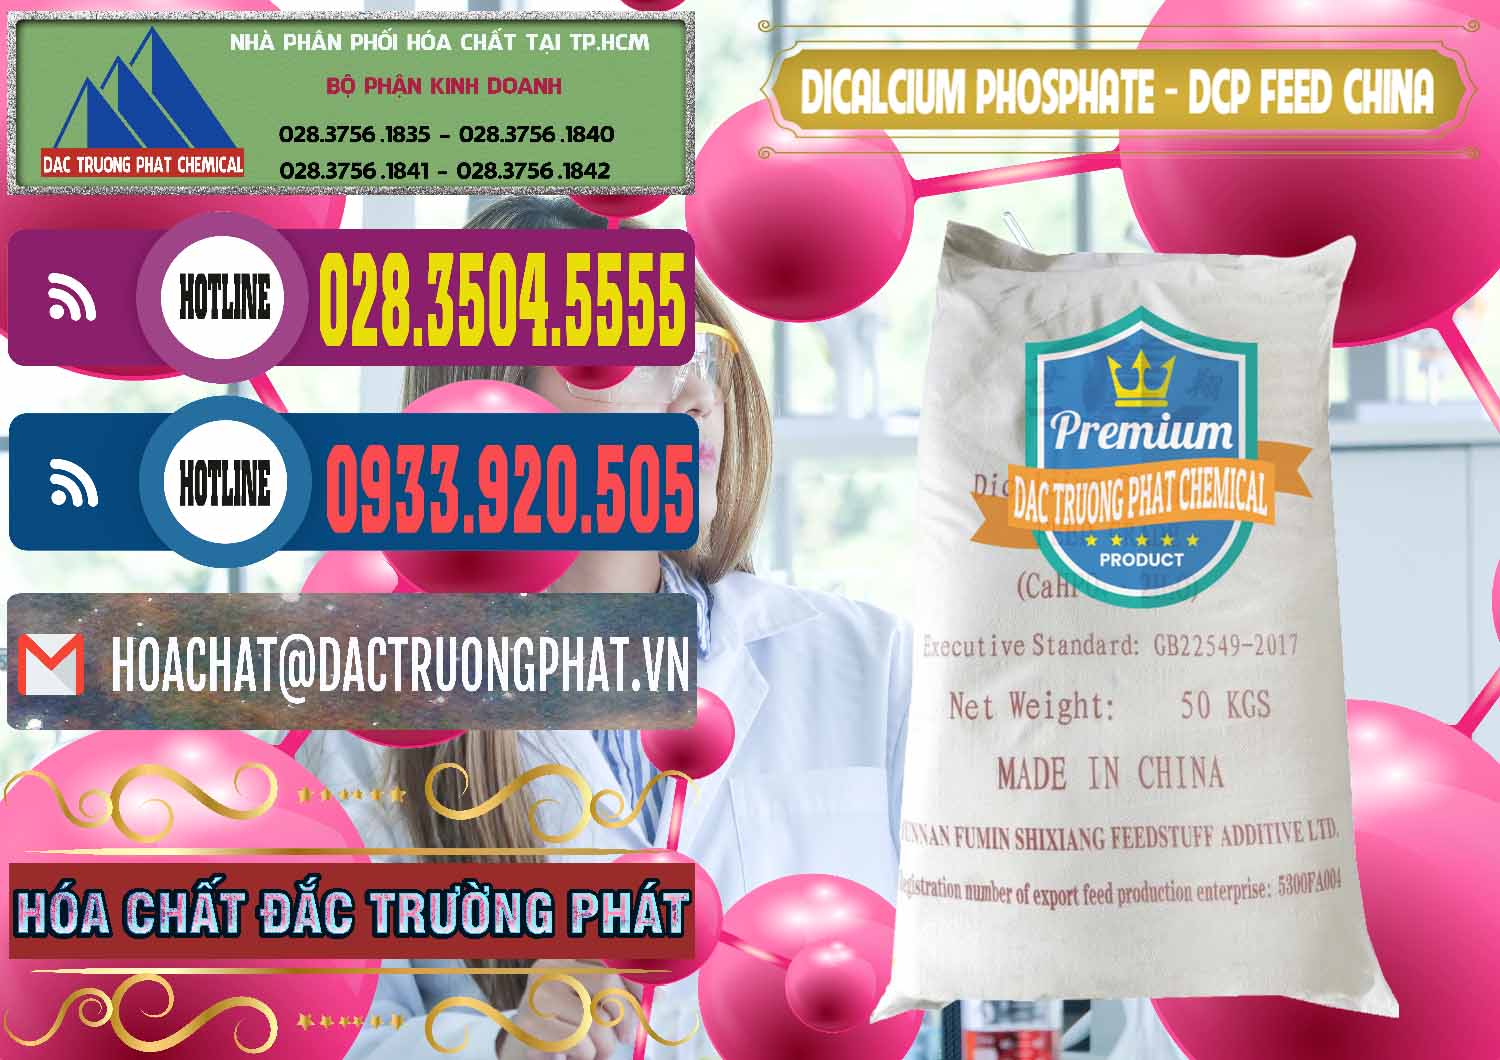 Công ty cung cấp & bán Dicalcium Phosphate - DCP Feed Grade Trung Quốc China - 0296 - Công ty cung ứng & phân phối hóa chất tại TP.HCM - muabanhoachat.com.vn